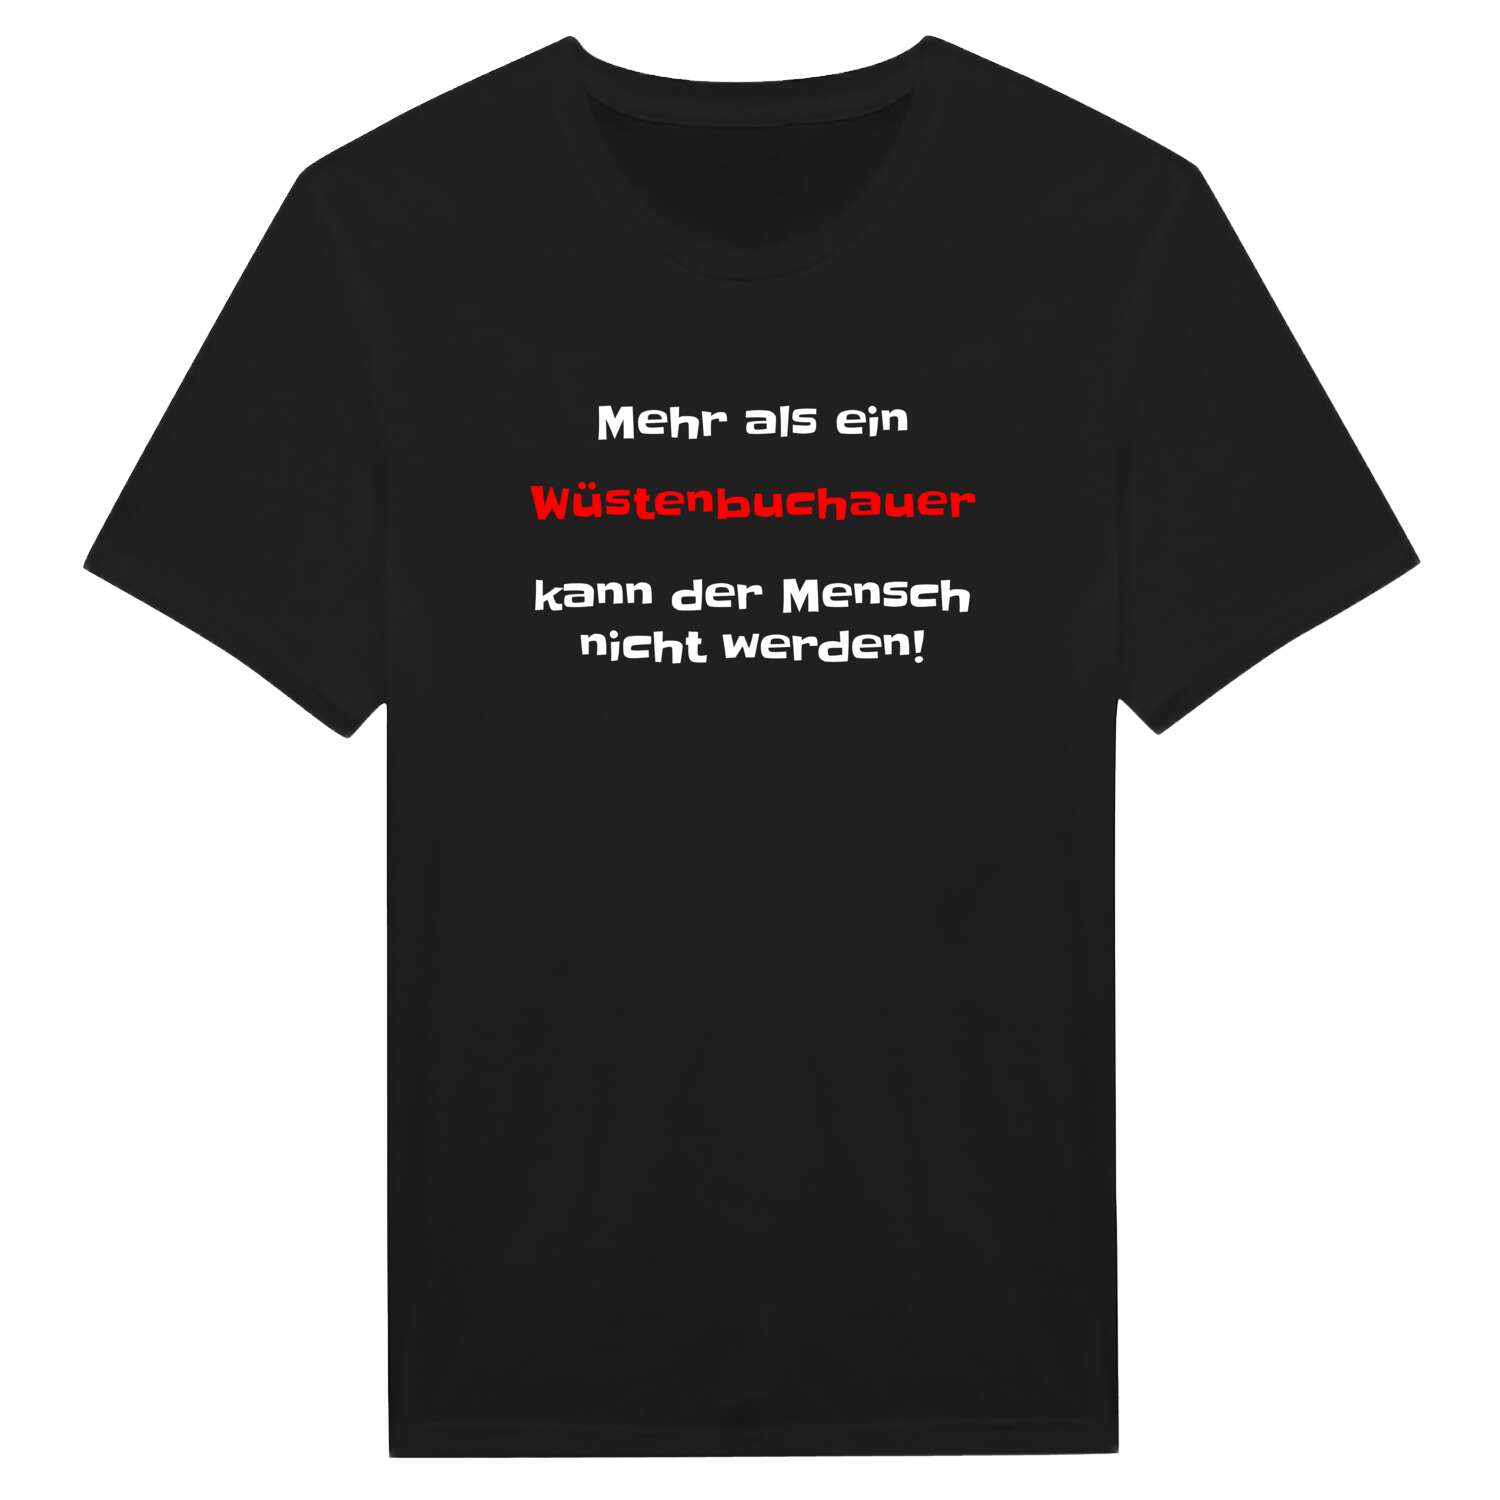 Wüstenbuchau T-Shirt »Mehr als ein«